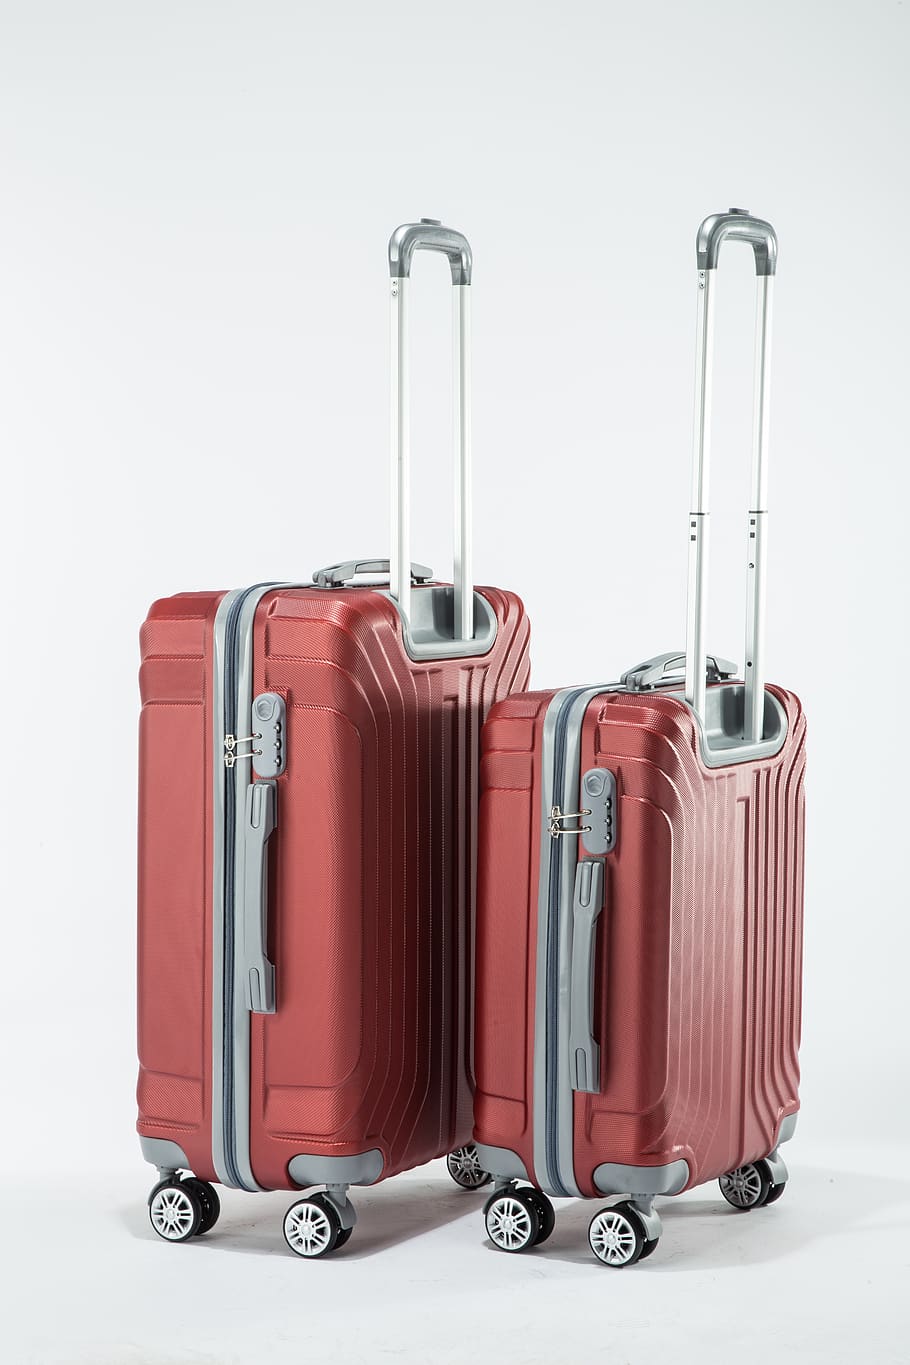 travel bag, hard and, bag, travel, indoors, suitcase, studio shot, white background, luggage, journey